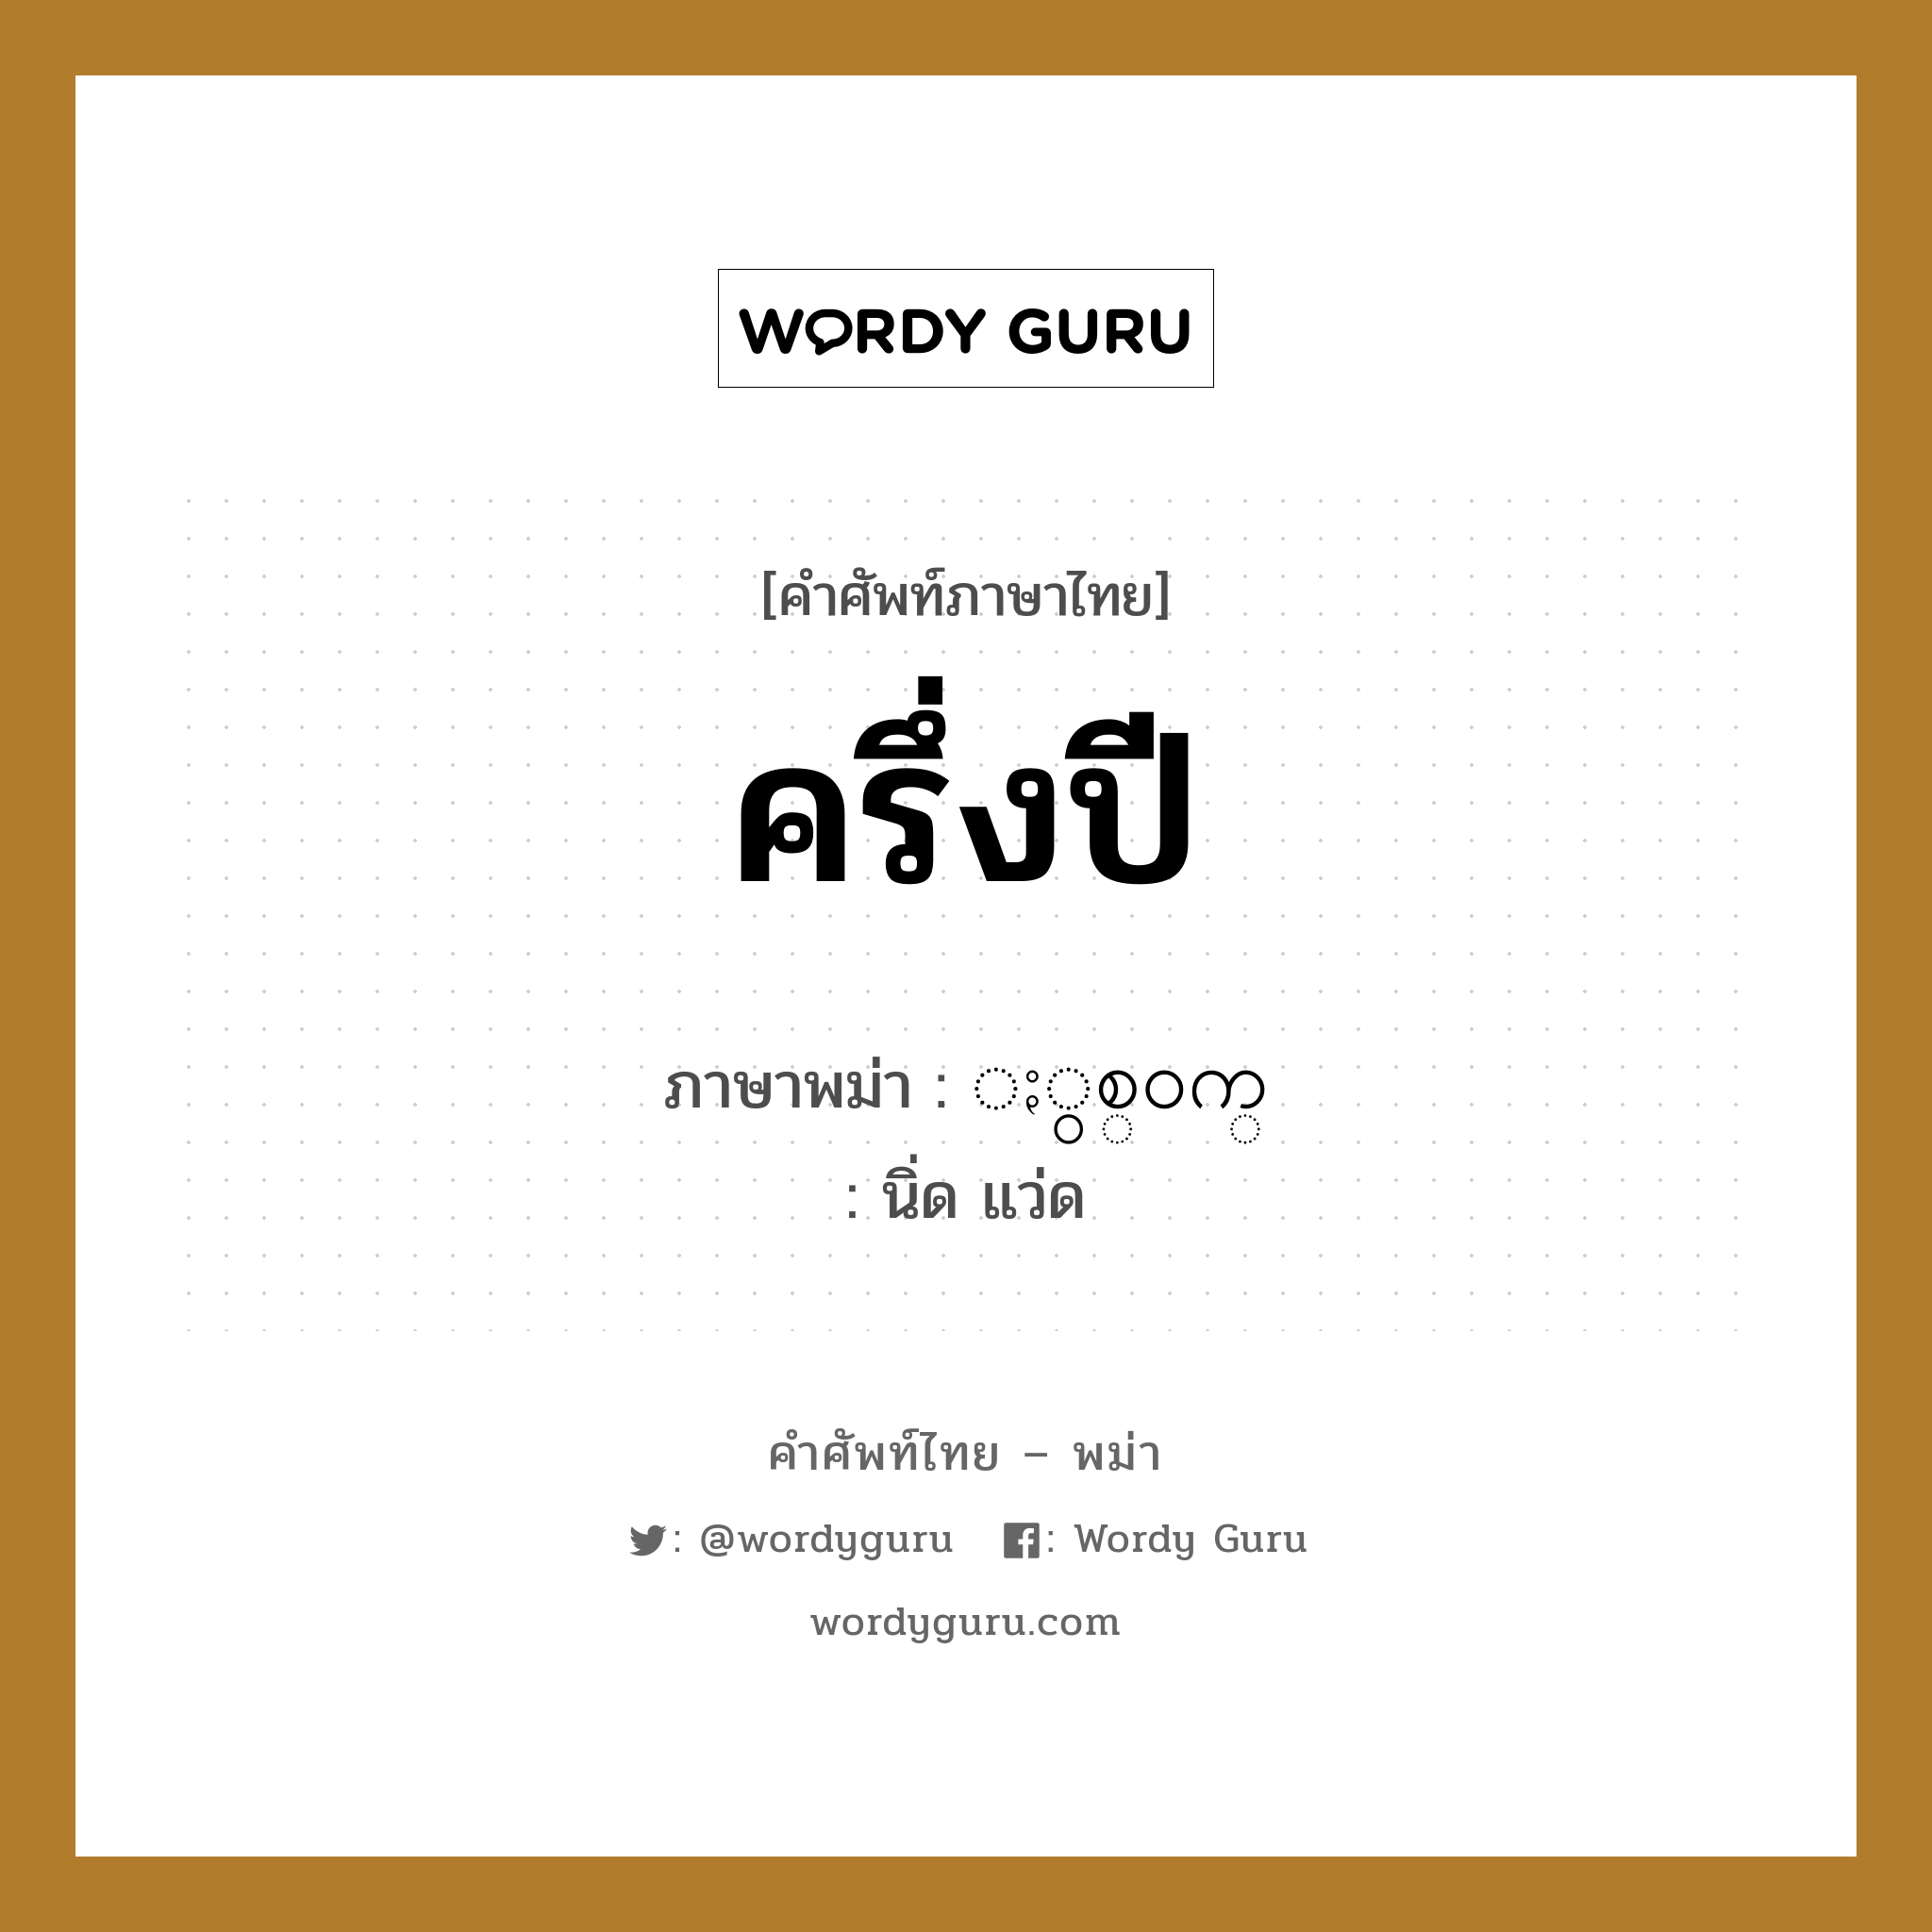 ครึ่งปี ภาษาพม่าคืออะไร, คำศัพท์ภาษาไทย - พม่า ครึ่งปี ภาษาพม่า ႏွစ္၀က္ หมวด หมวดวัน เดือน ปี นิ่ด แว่ด หมวด หมวดวัน เดือน ปี